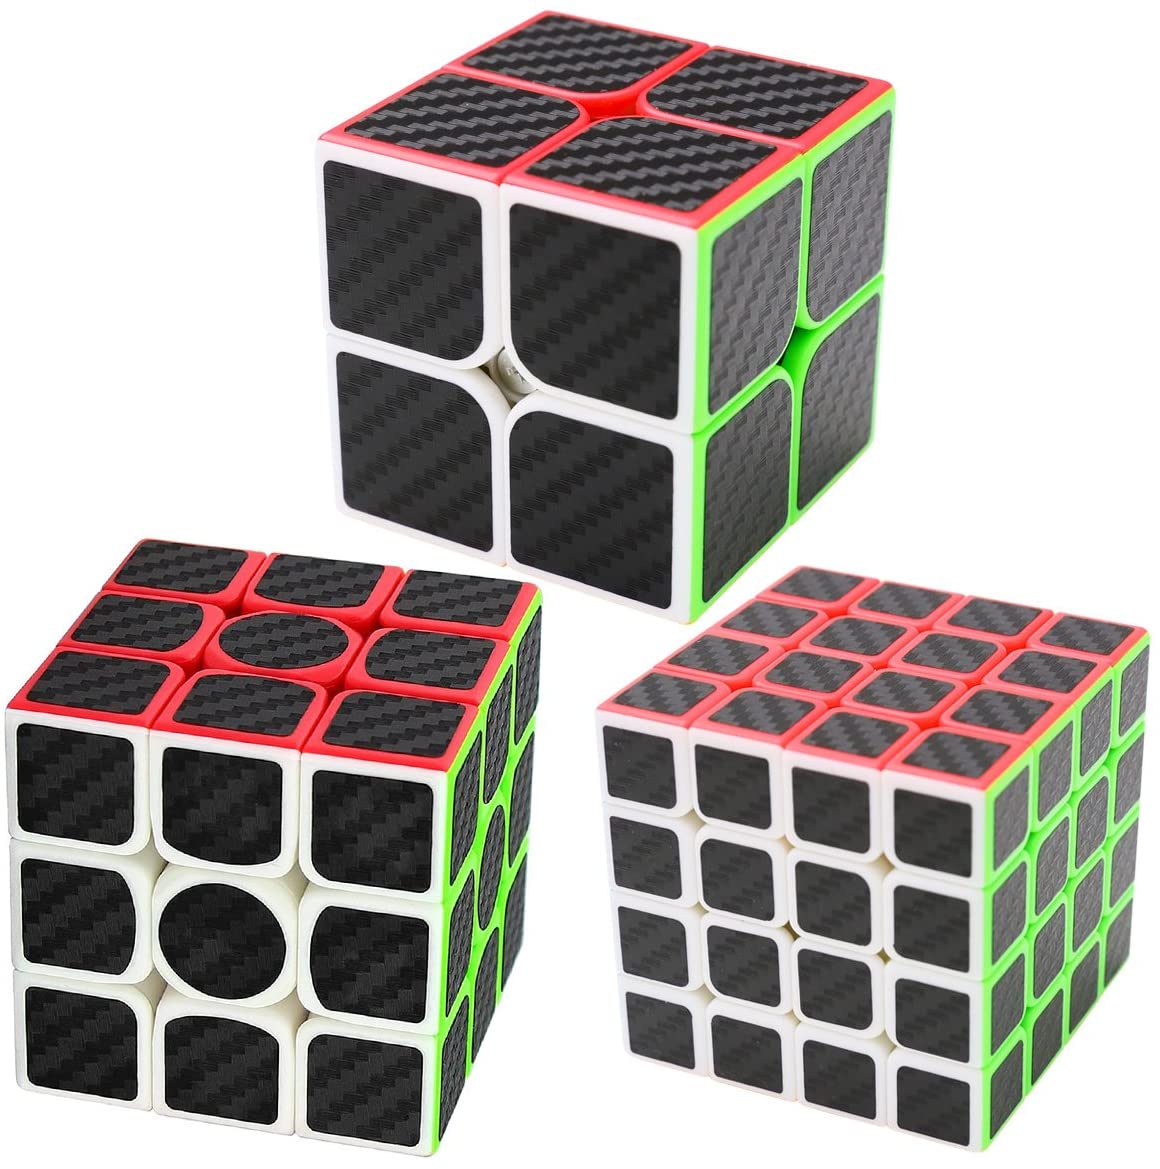 Coolzon 2x2x2 Puzzle Magic Cube Speed Cubes Twist Toys Carbon Fiber Sticker 